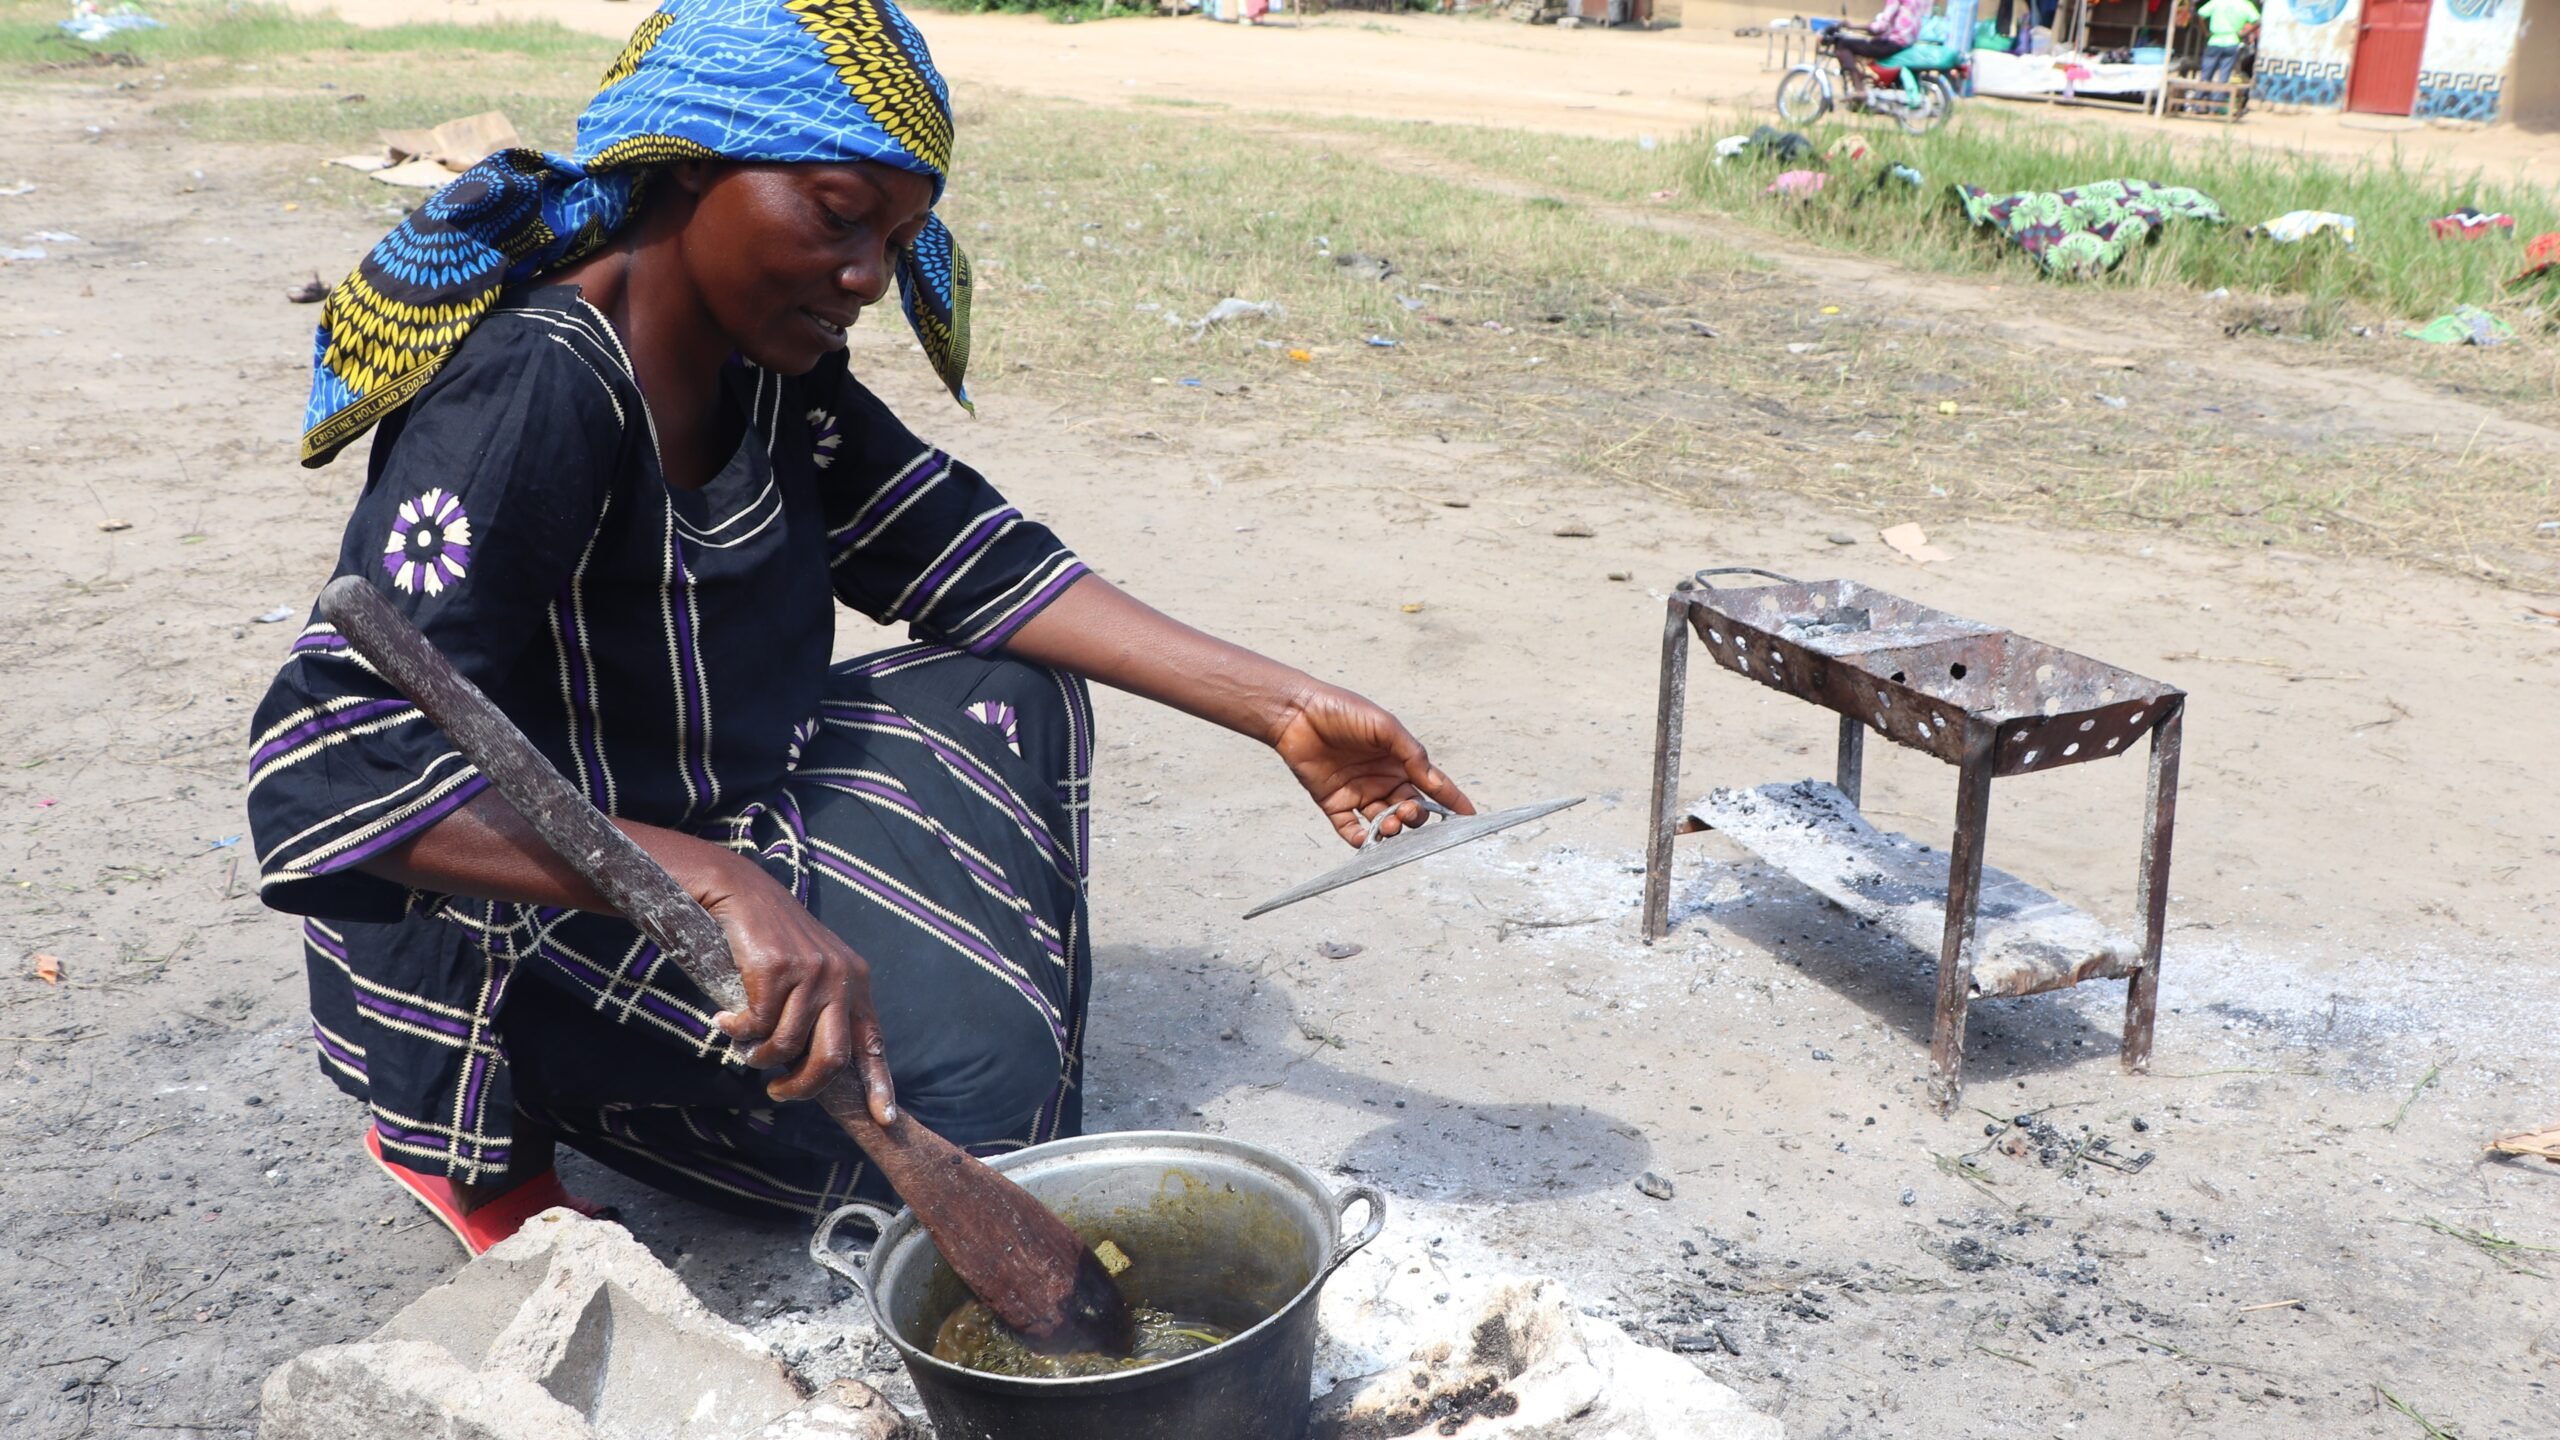 Mayanda Béatrice, 54, prépare des feuilles de patates douces pour sa famille. Elle a fui le village de Bokala, dans la province de Mai Ndombe, où elle travaillée dans les champs. Depuis août, elle habite dans le centre collectif de Bandundu, dans la province de Kwilu. Bétrice a marchée avec ses trois enfants et son beau fils pendant cinq jours afin de joindre Bandunu. © HCR/Simon Lubuku